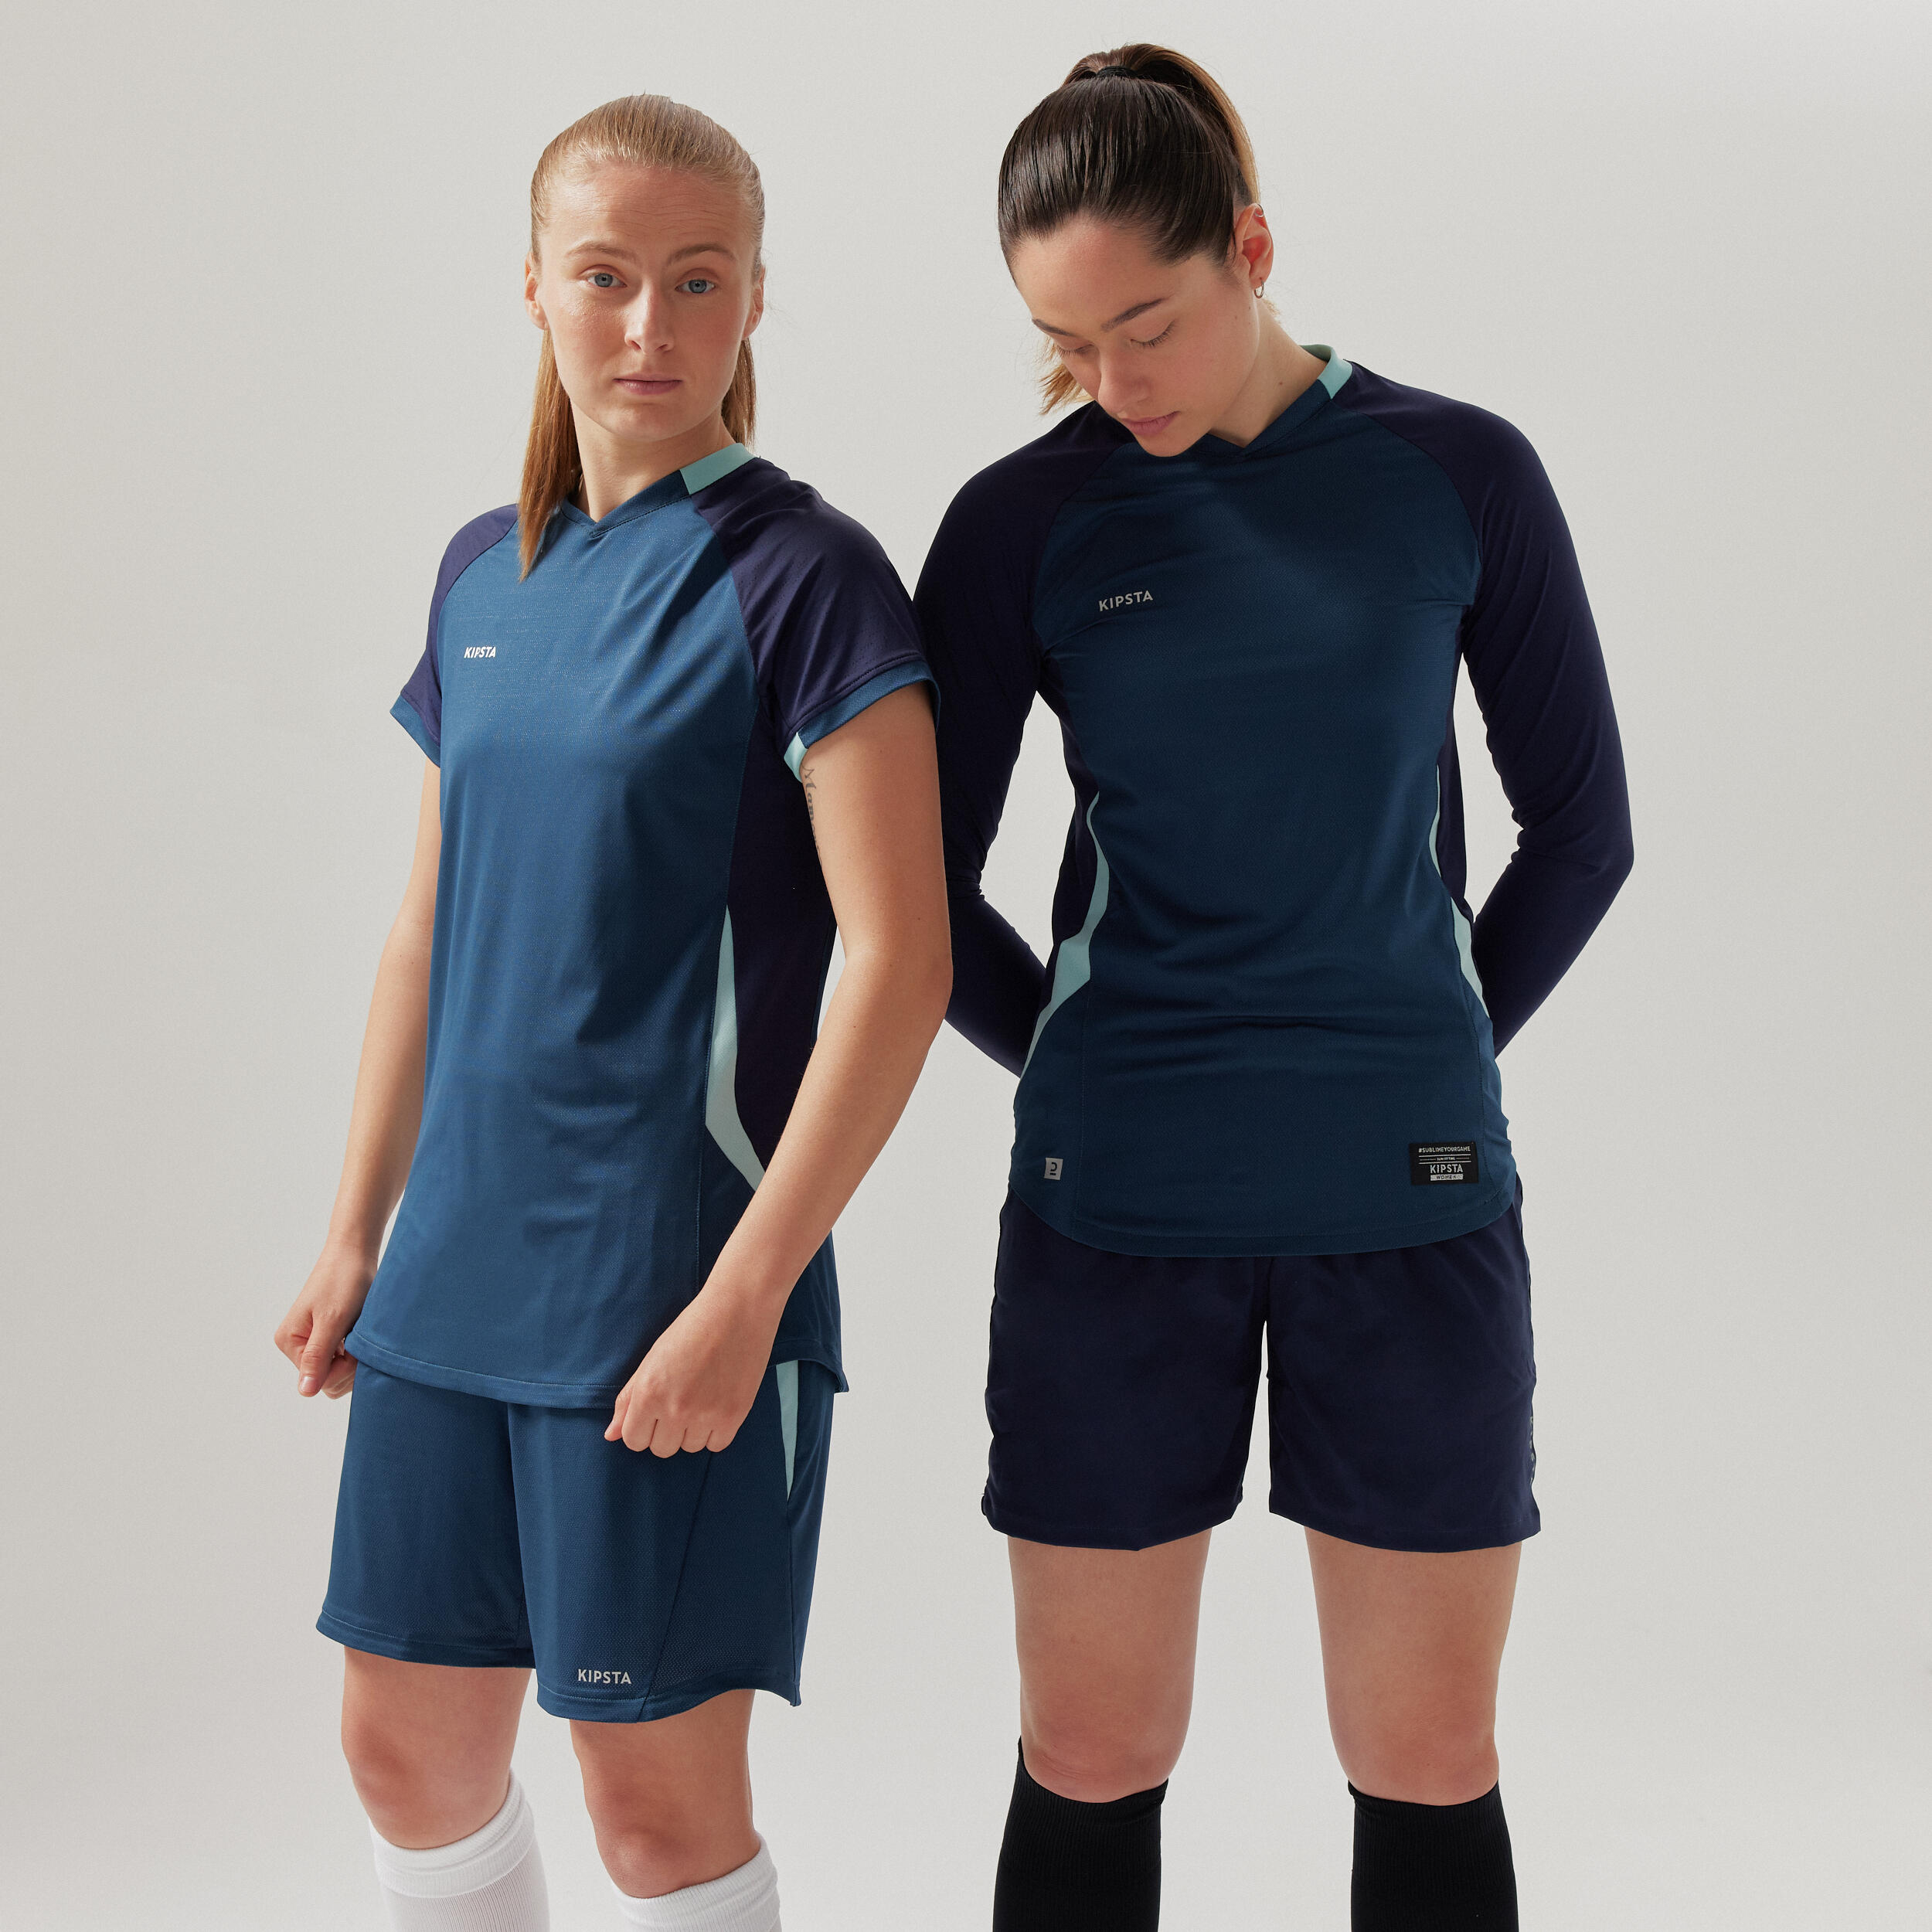 Women's Short-Sleeved Straight Cut Football Shirt - Blue 7/7